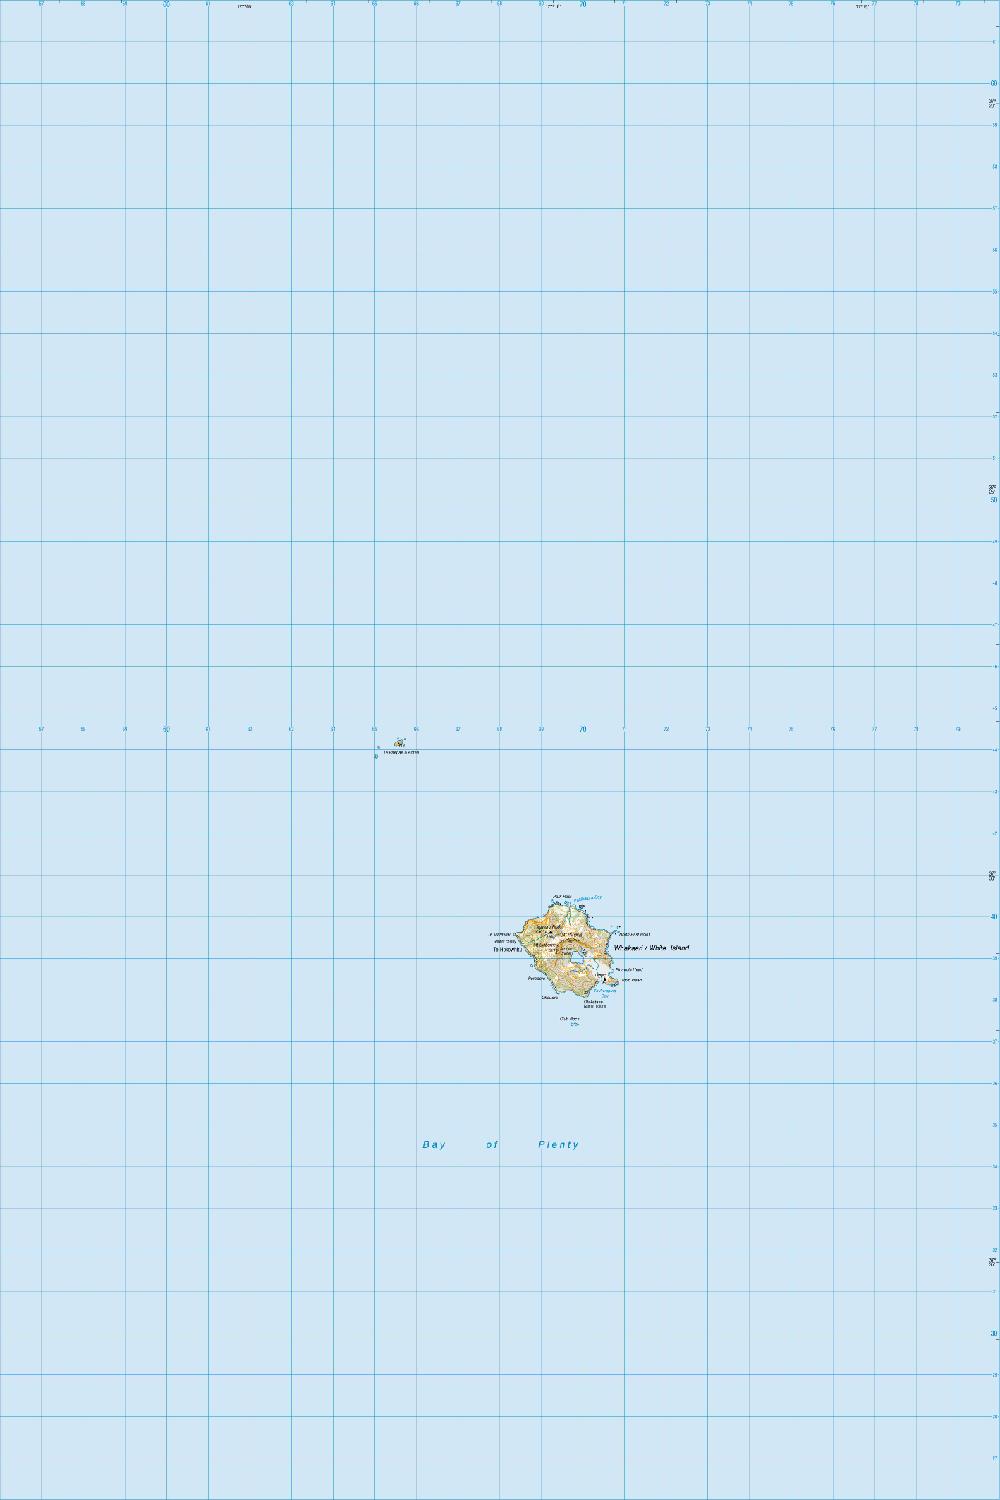 Topo map of Whakaari / White Island